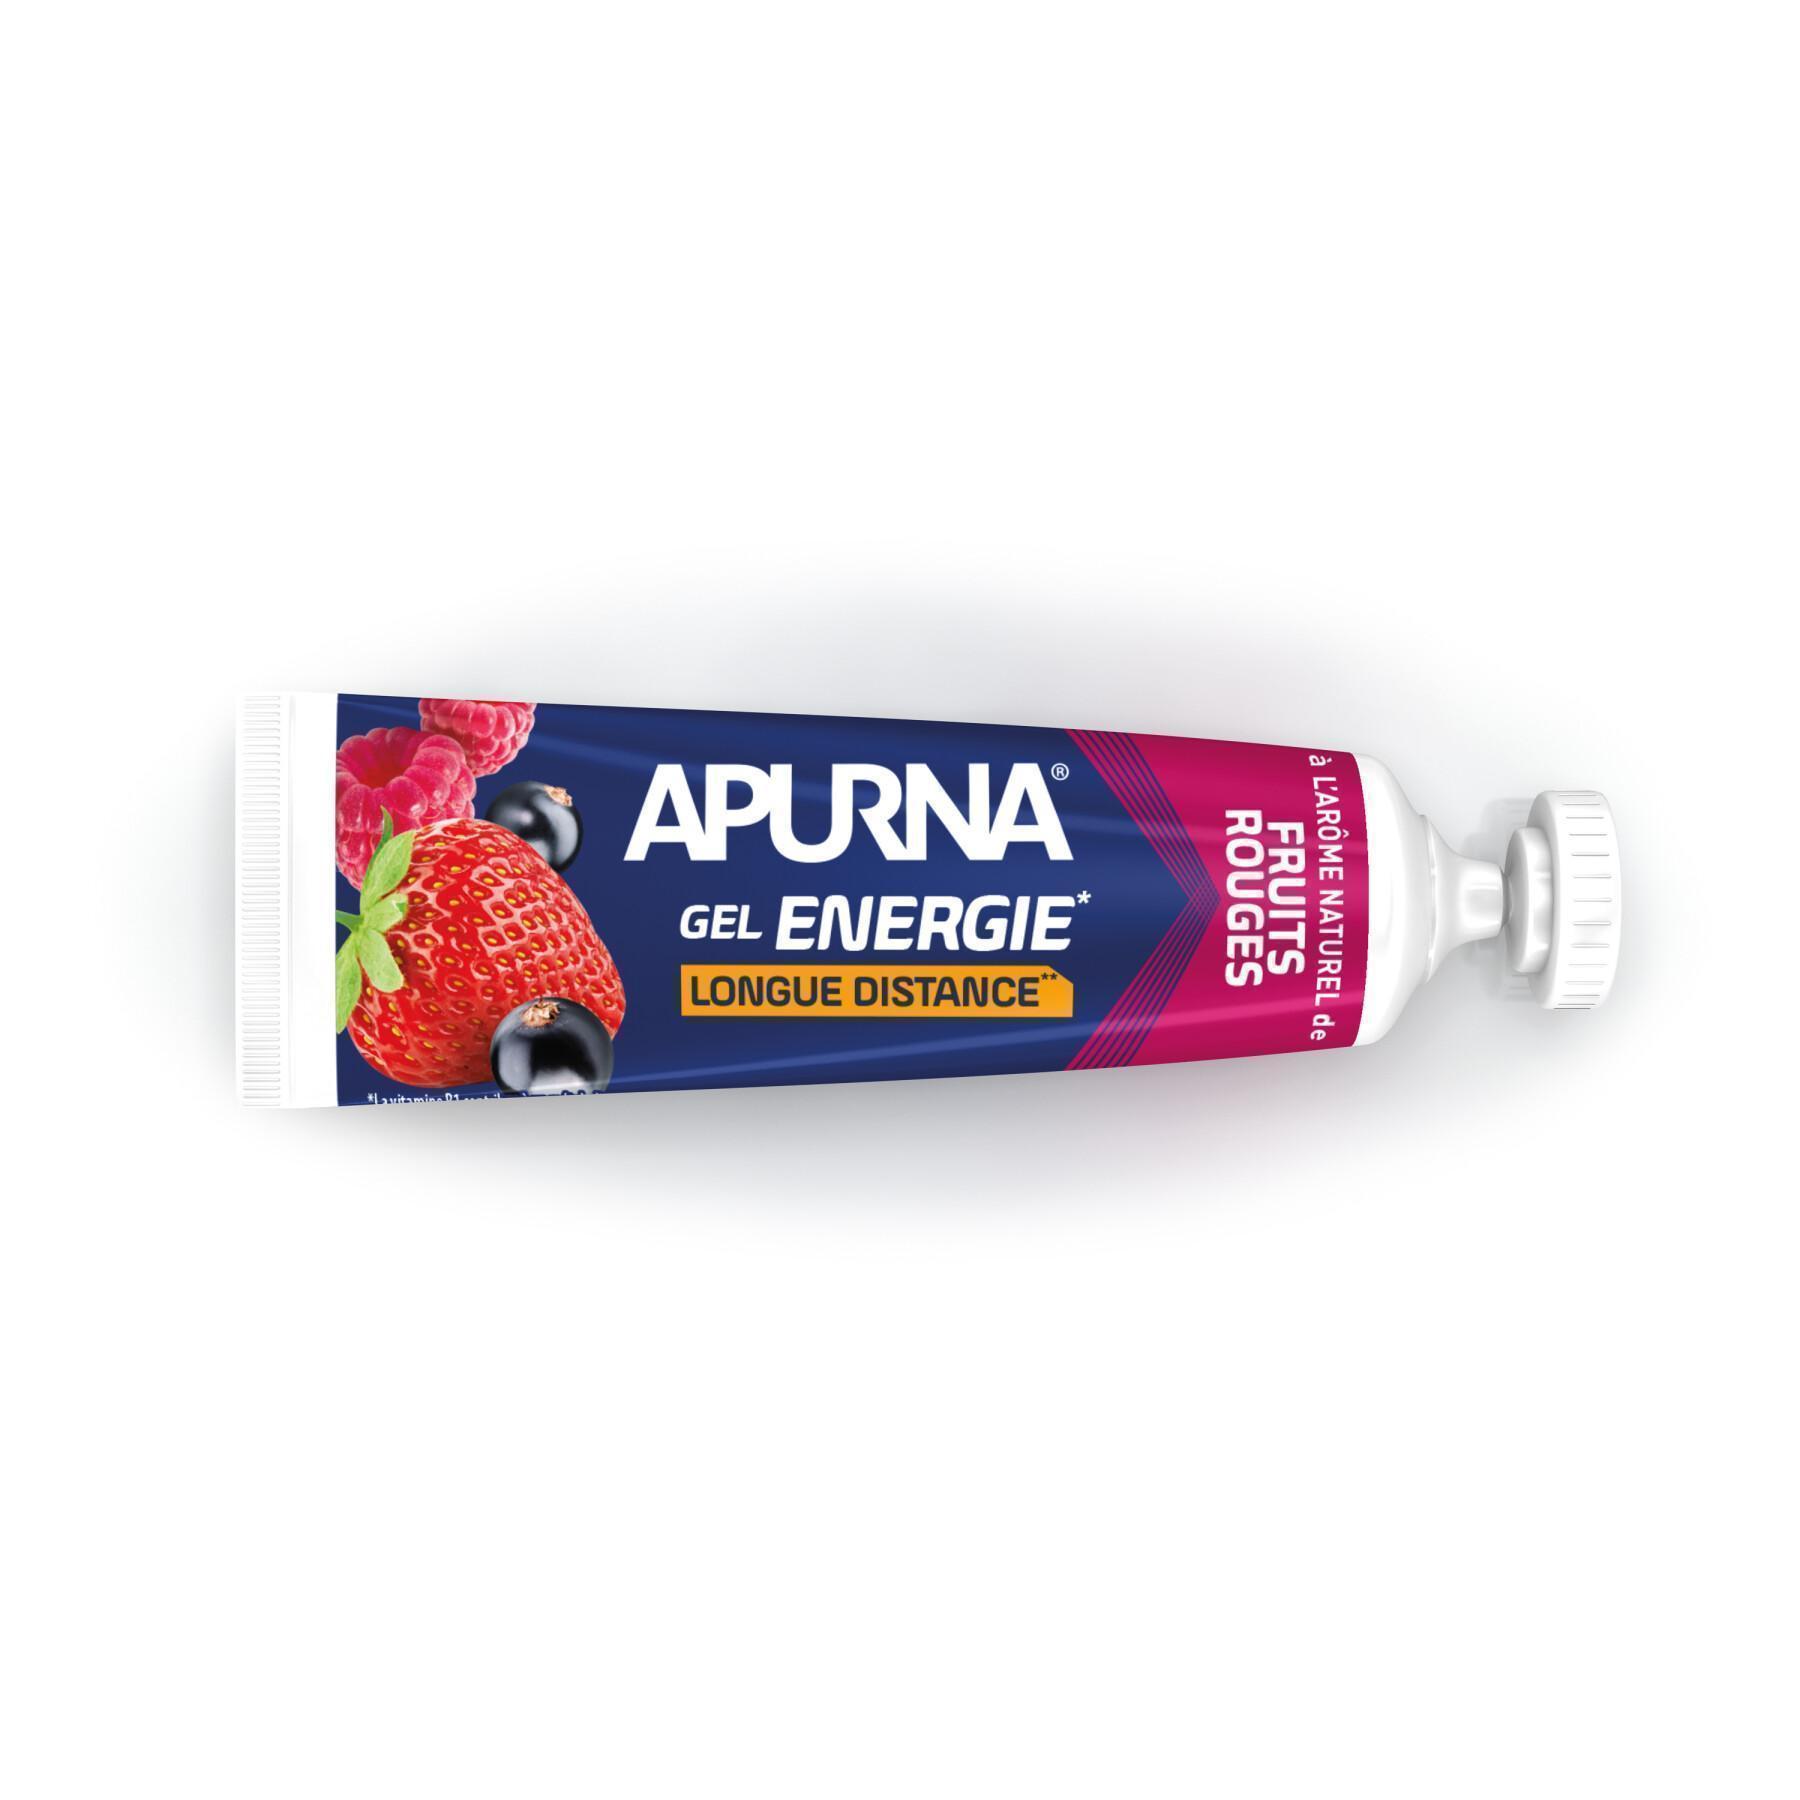 Paquete de 25 geles Apurna Energie fruits rouges - 35g 